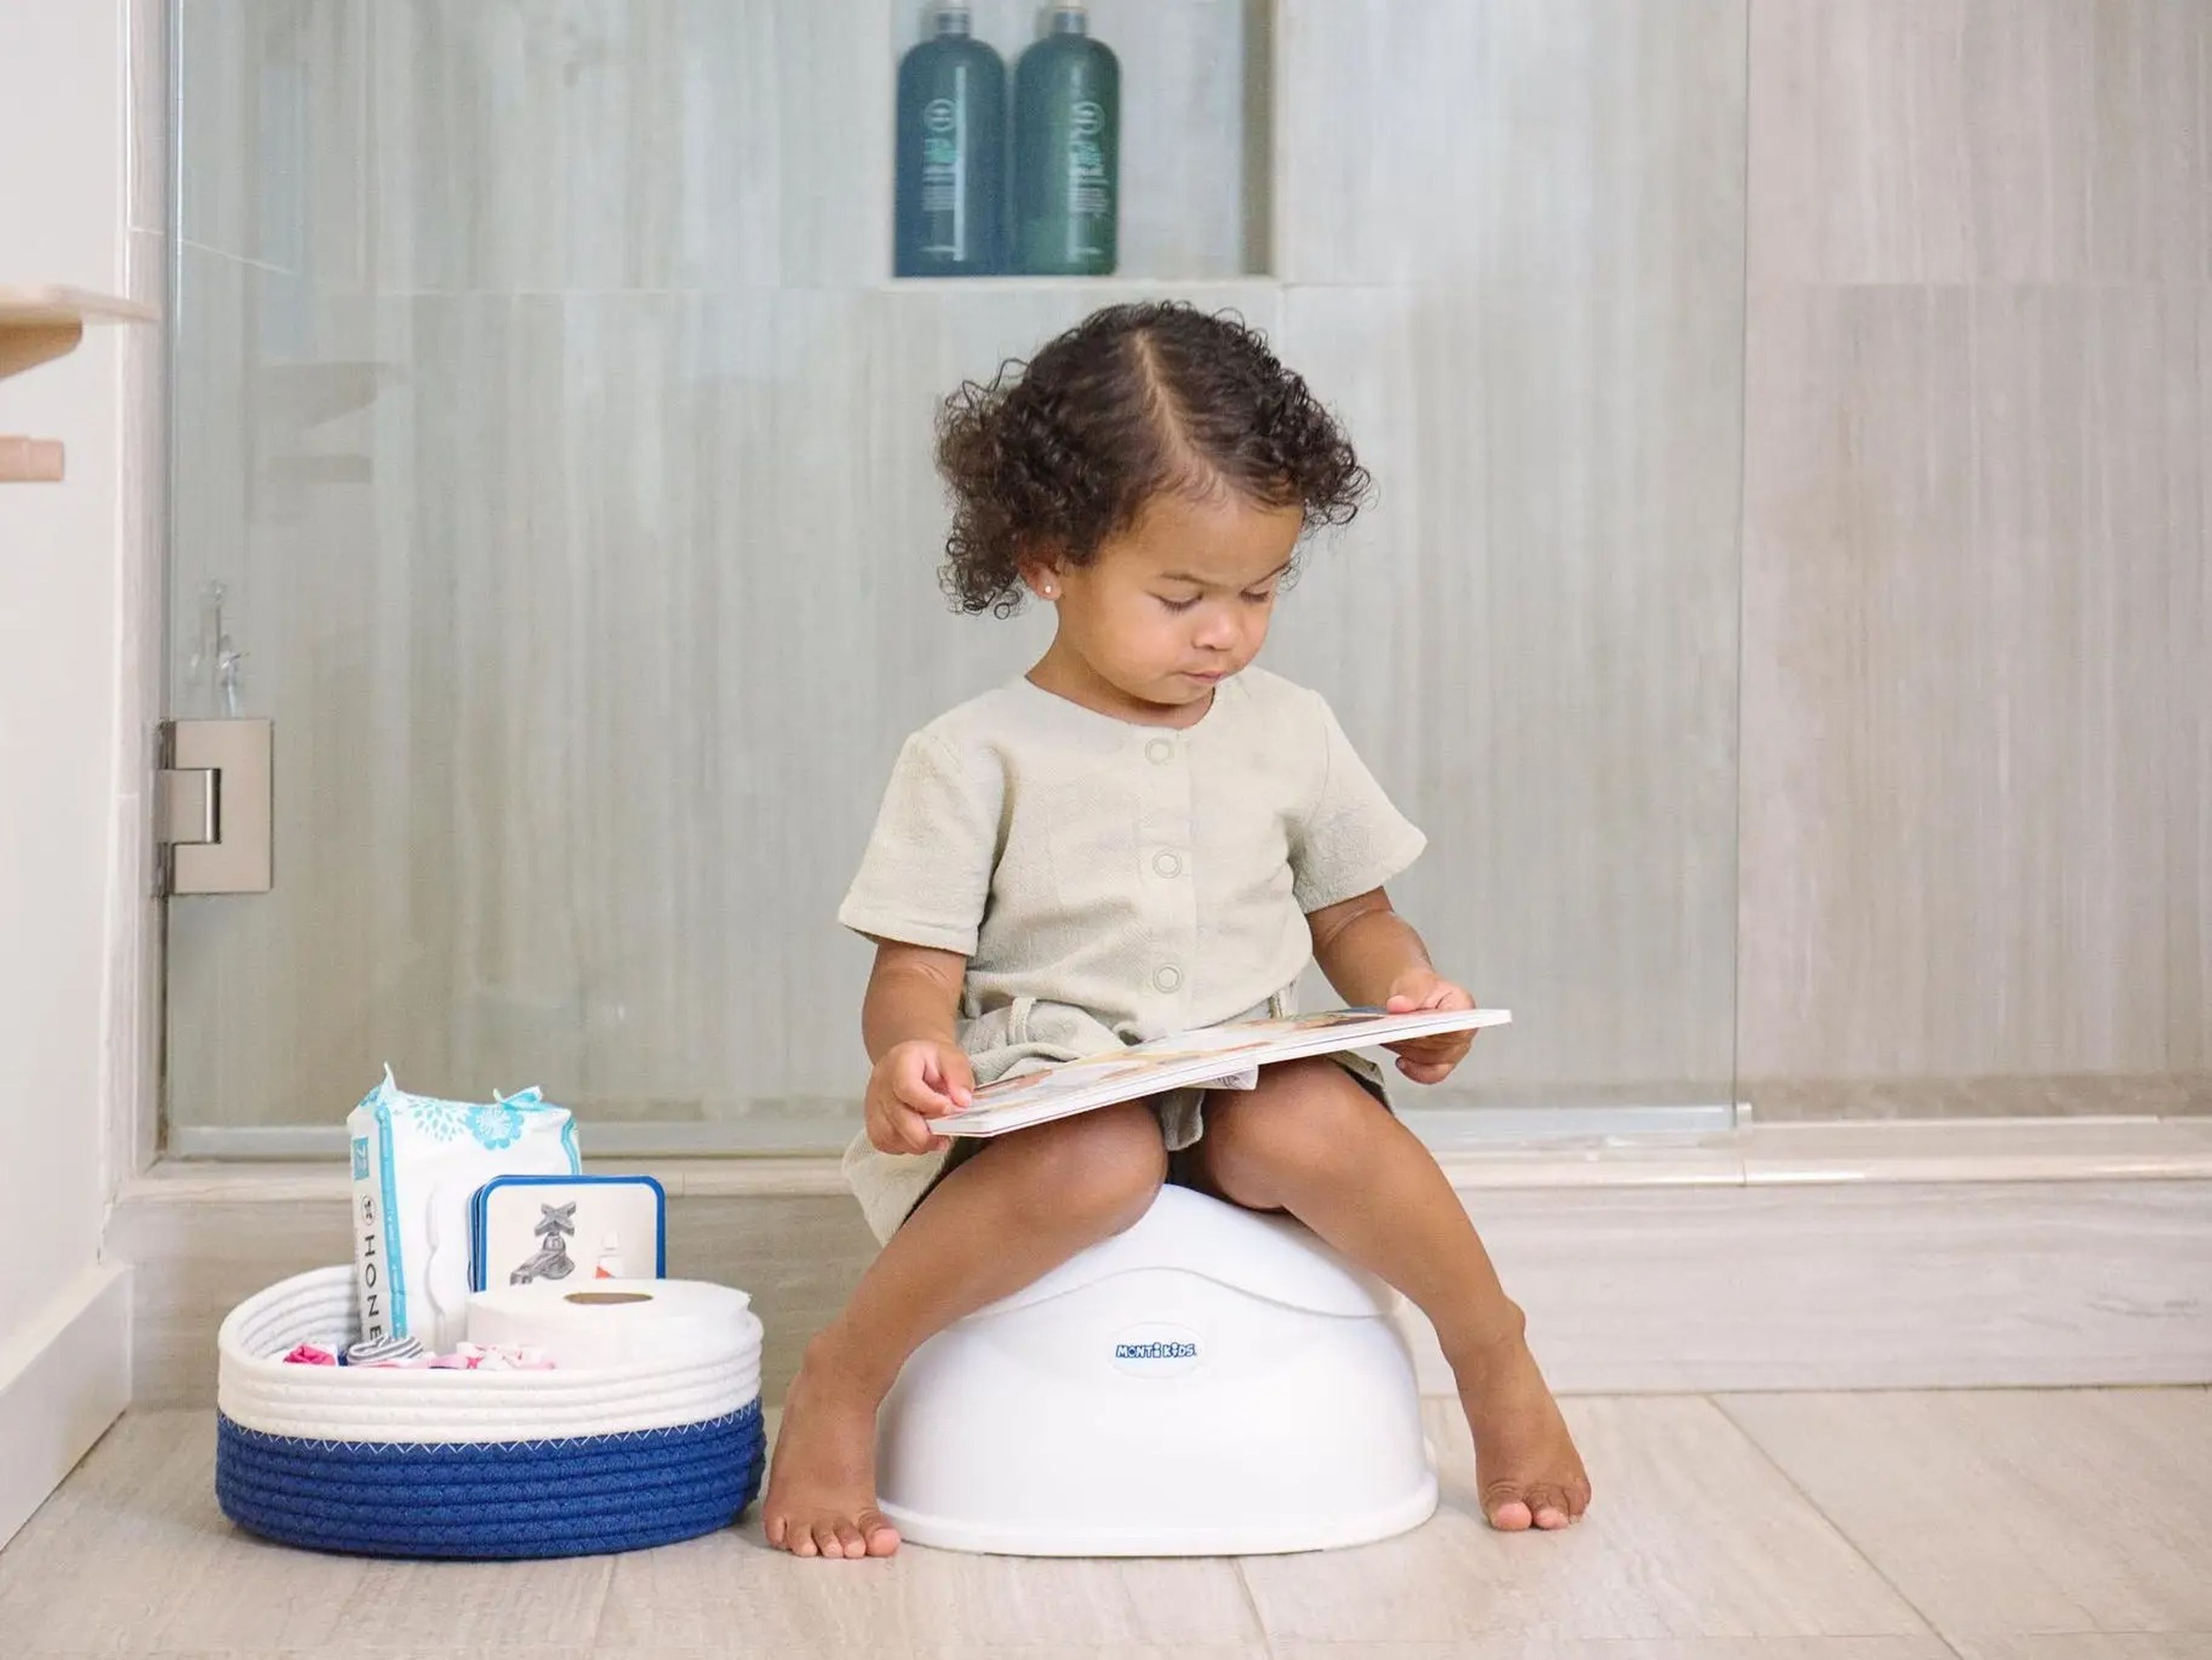 El uso de un tamaño más adecuado ayudará a los niños a gestionar mejor los viajes al baño.